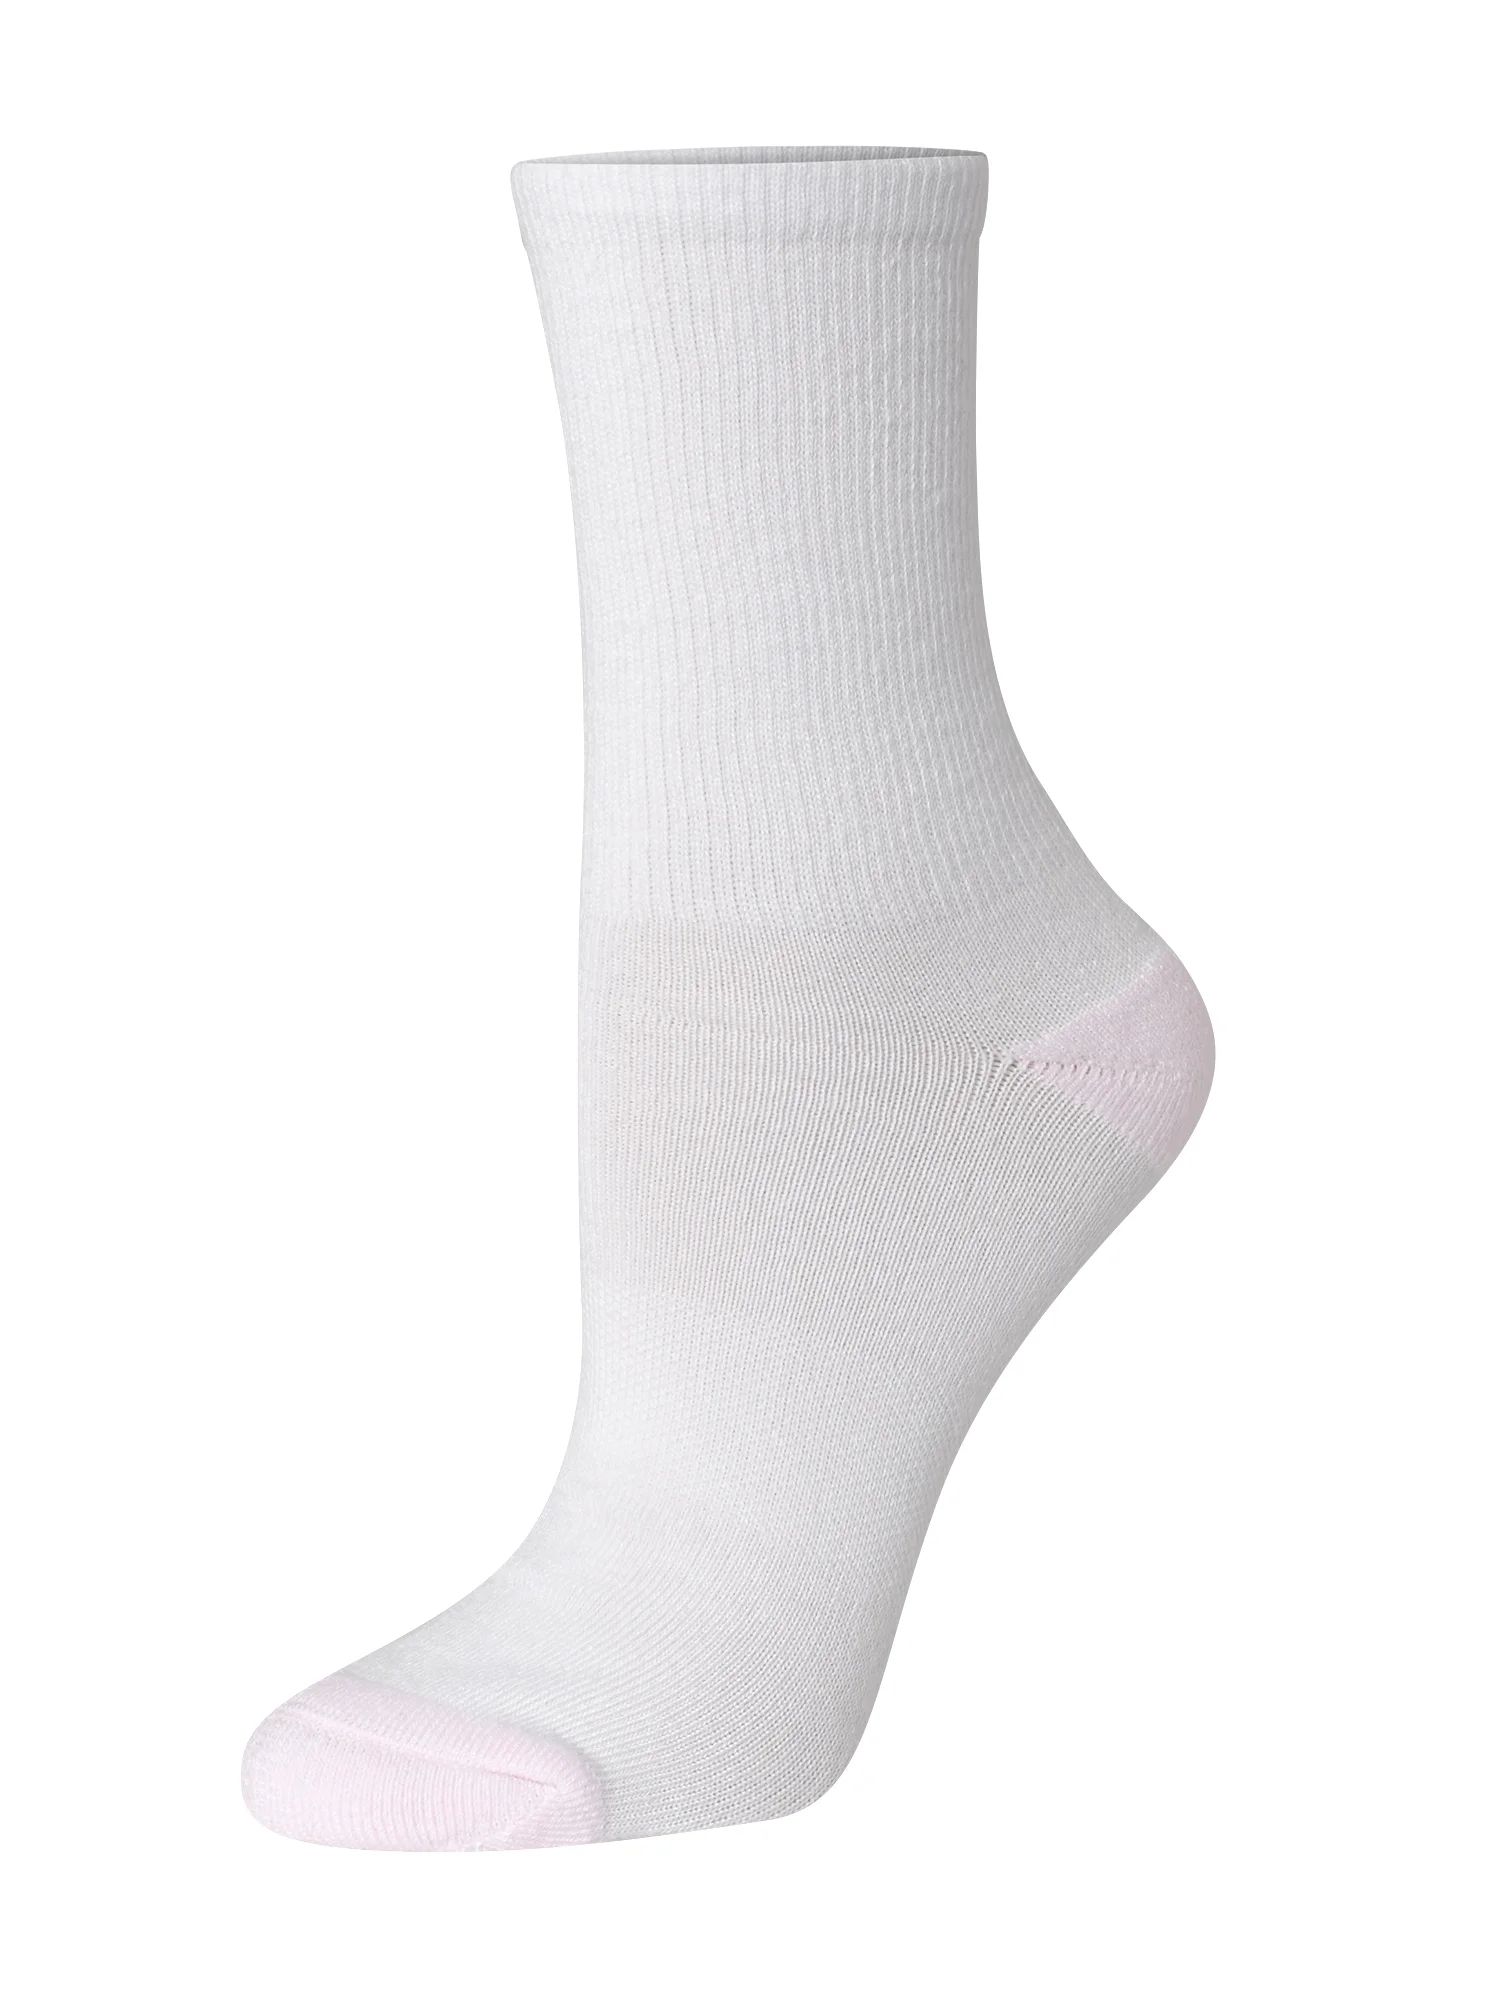 Hanes Women's Comfort Fit Crew Socks 10-pack | Walmart (US)